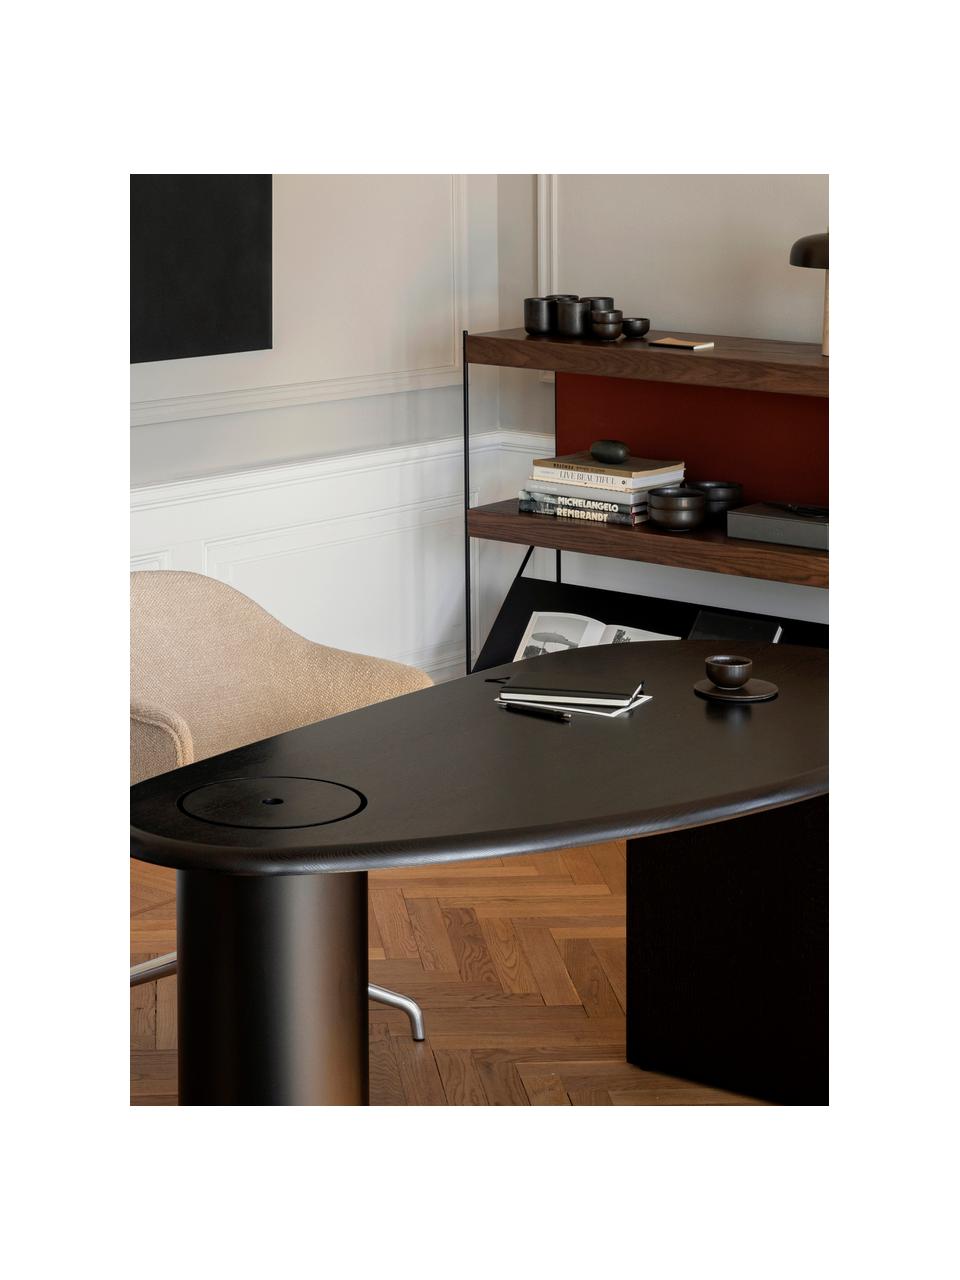 Schreibtisch Eclipse in Schwarz, Tischplatte: Eichenholz, massiv und ge, Gestell: Stahl, beschichtet, Eichenholz, schwarz geölt, B 160 x T 80 cm